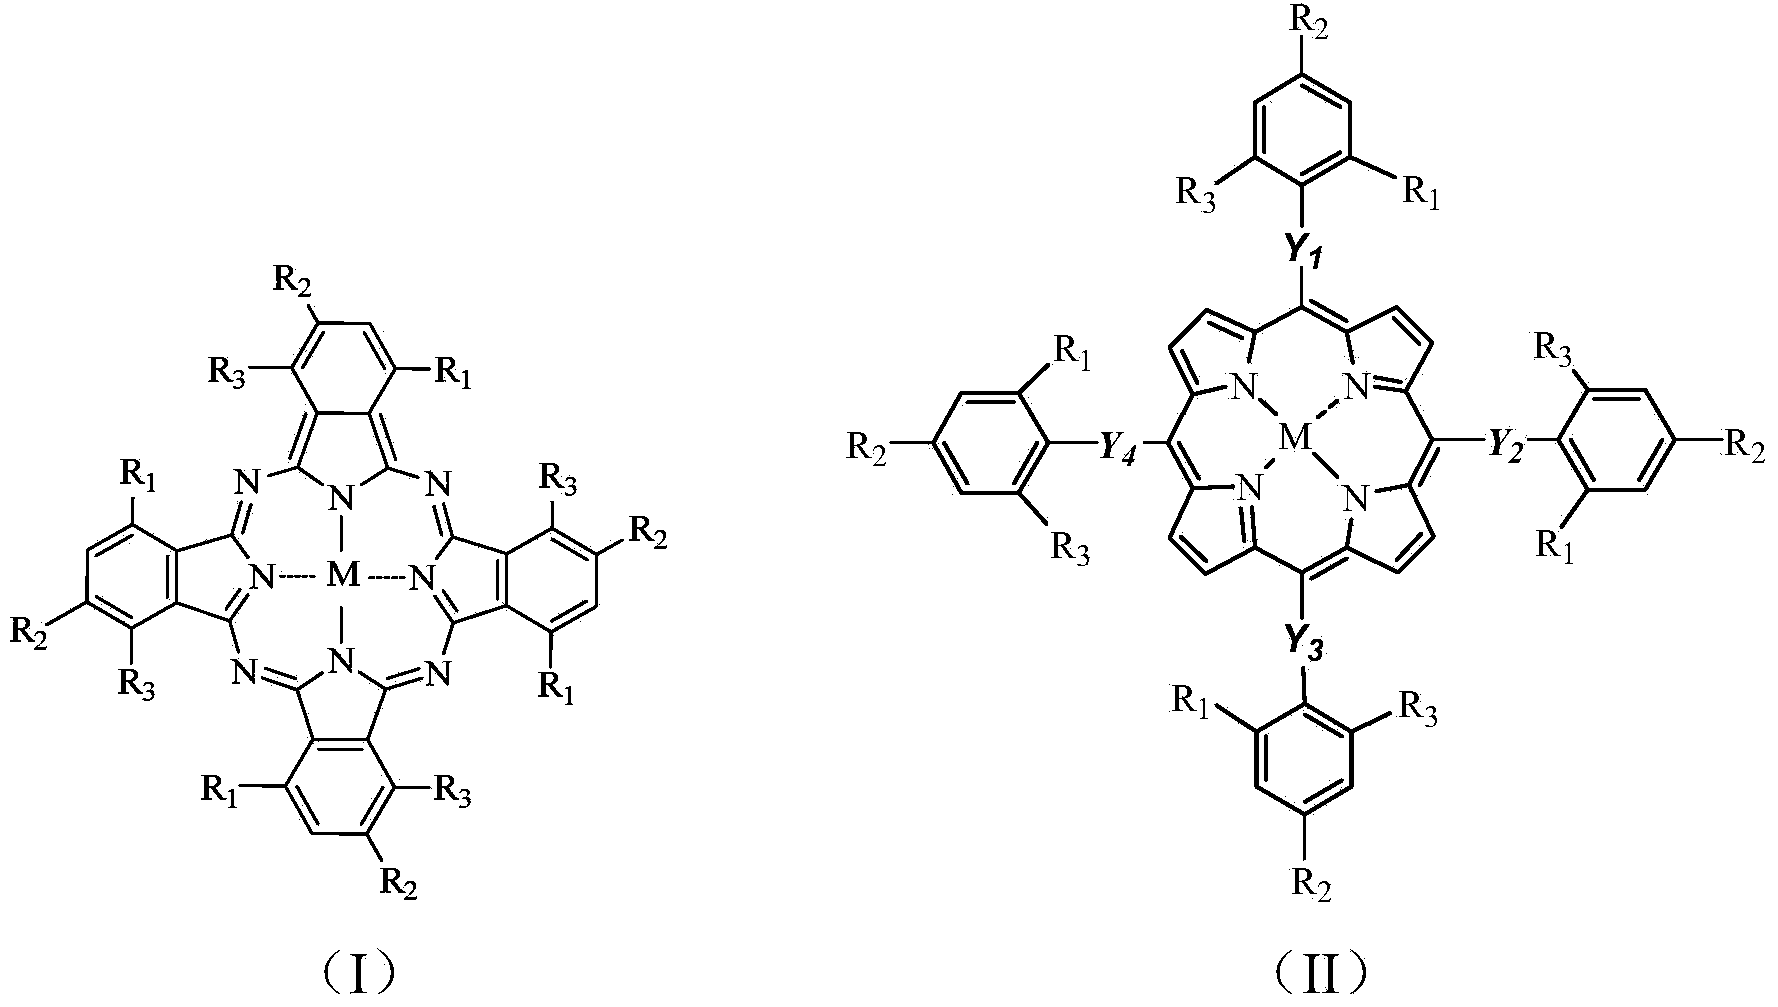 Photodissociation reaction method of benzothiophene compound for oxidative desulfurization